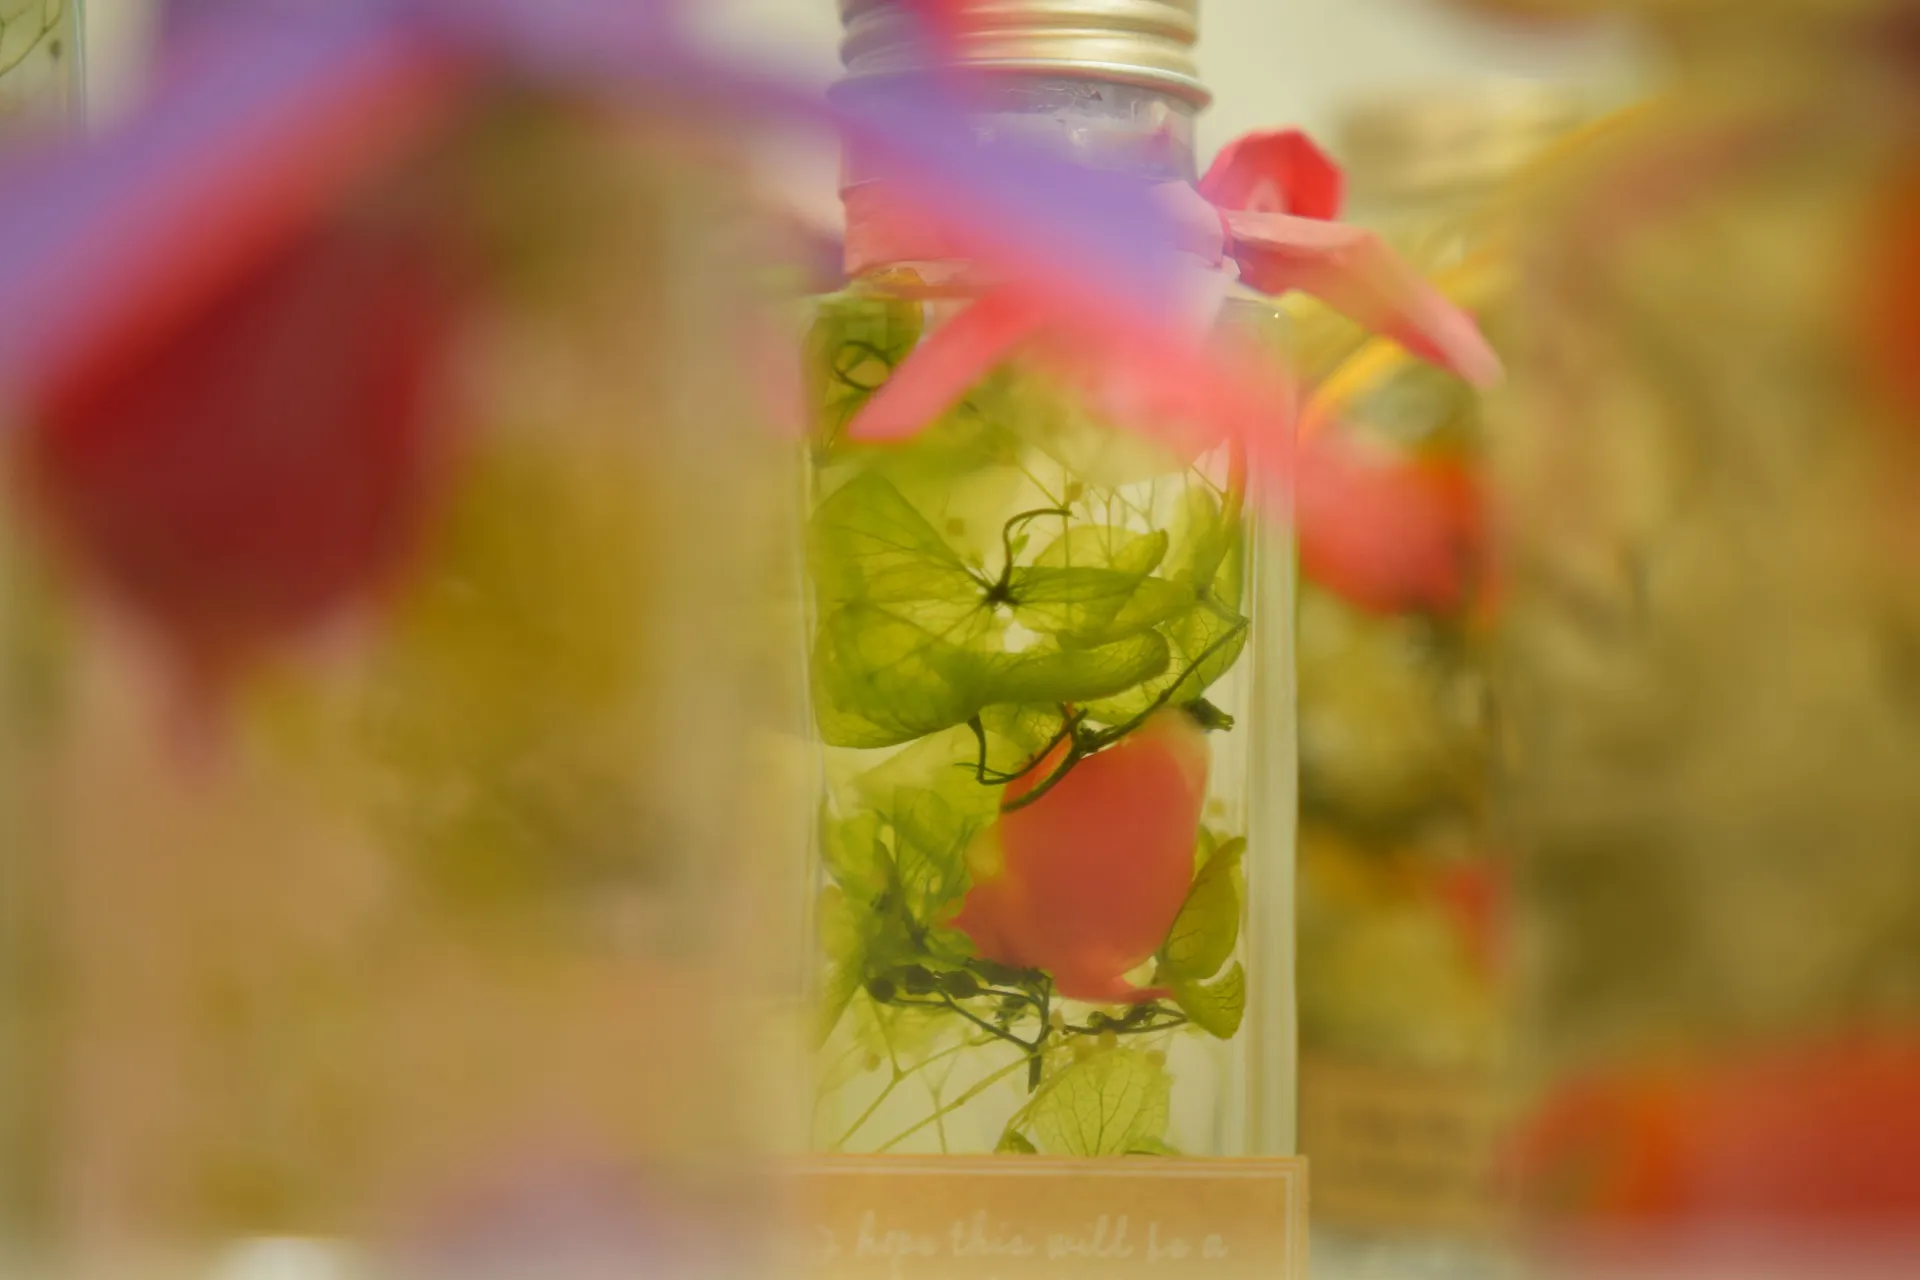 埼玉ふじみ野の花屋「フラワーショップ花のん」のブログもぜひご覧ください